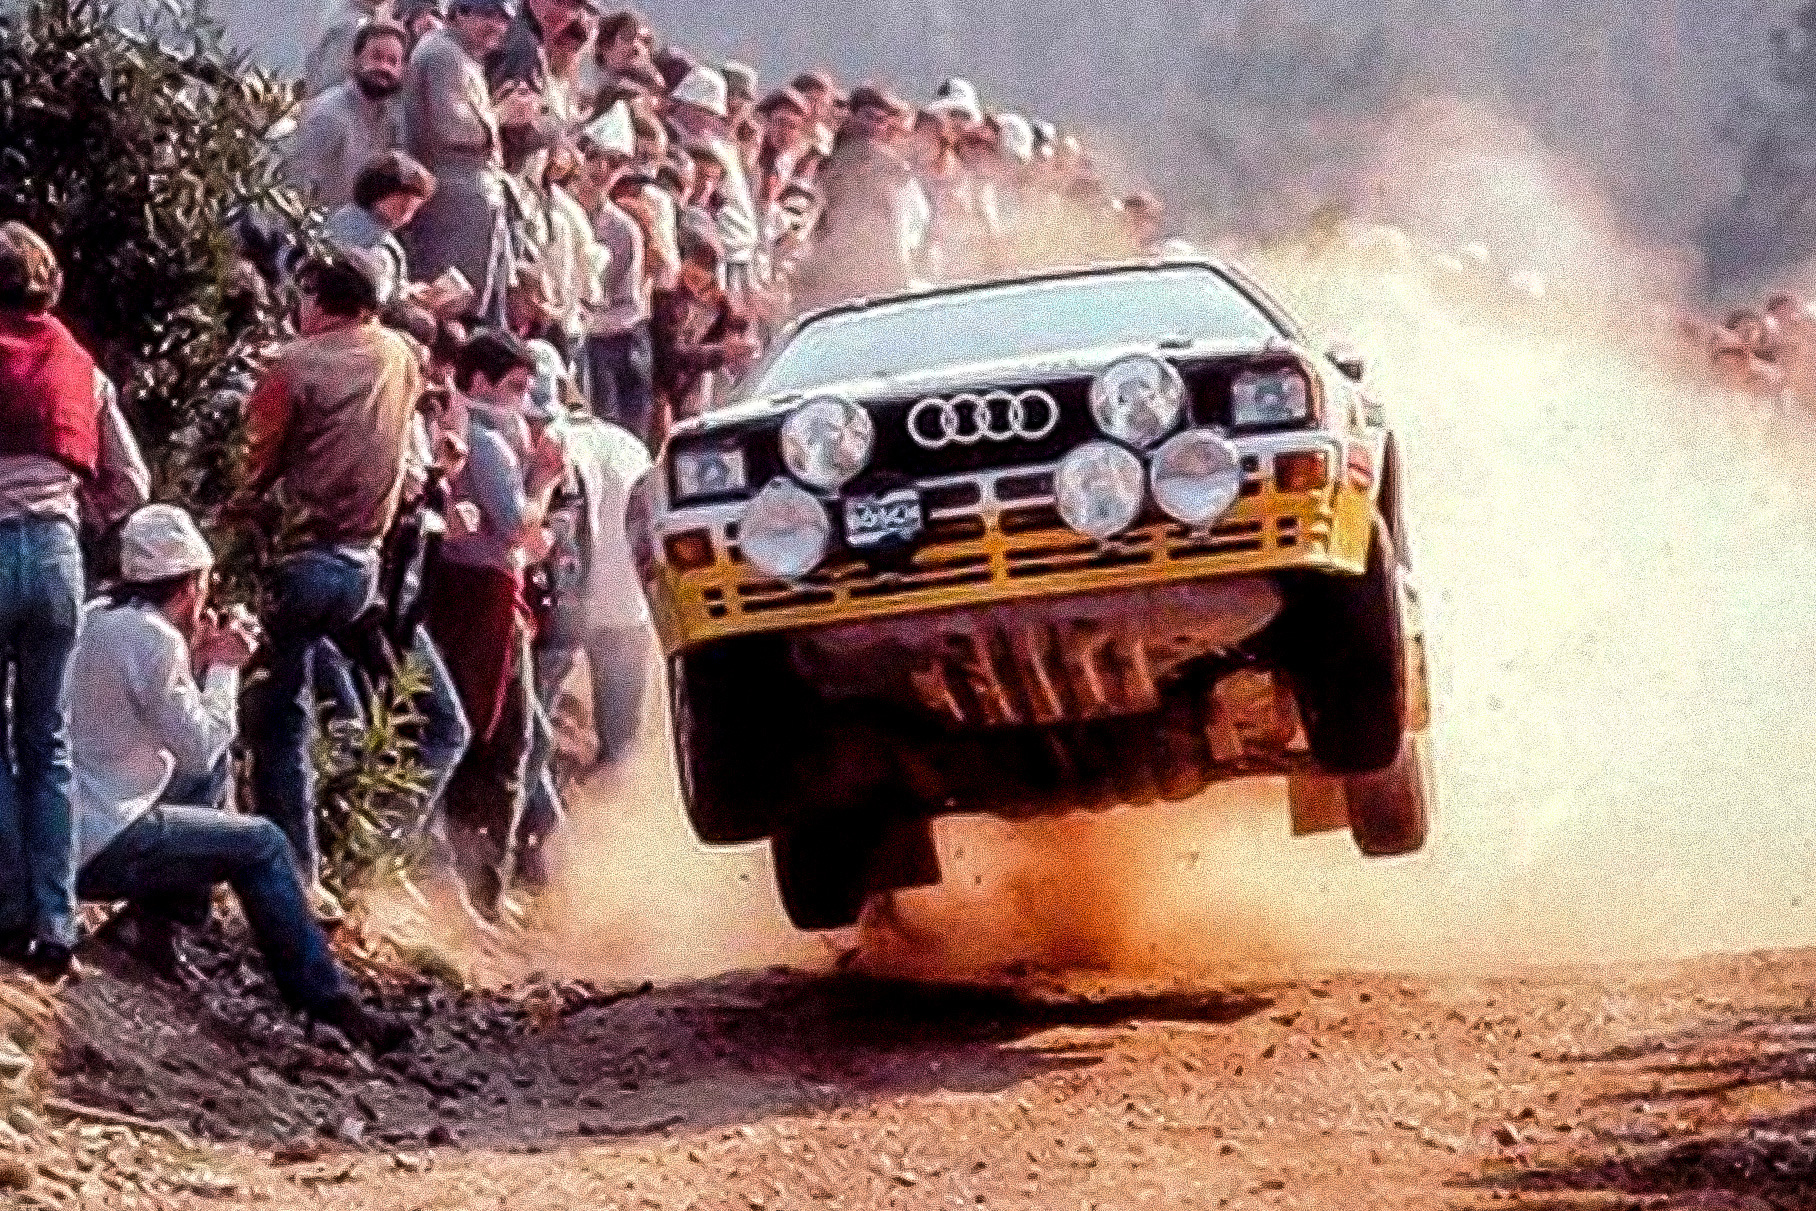 Главное событие в мире современного полного привода — появление полноприводных Audi. Конструкция и успех quattro стали примером для многих фирм — экспансия четырех ведущих колес в мир дорожных и гоночных машин началась.